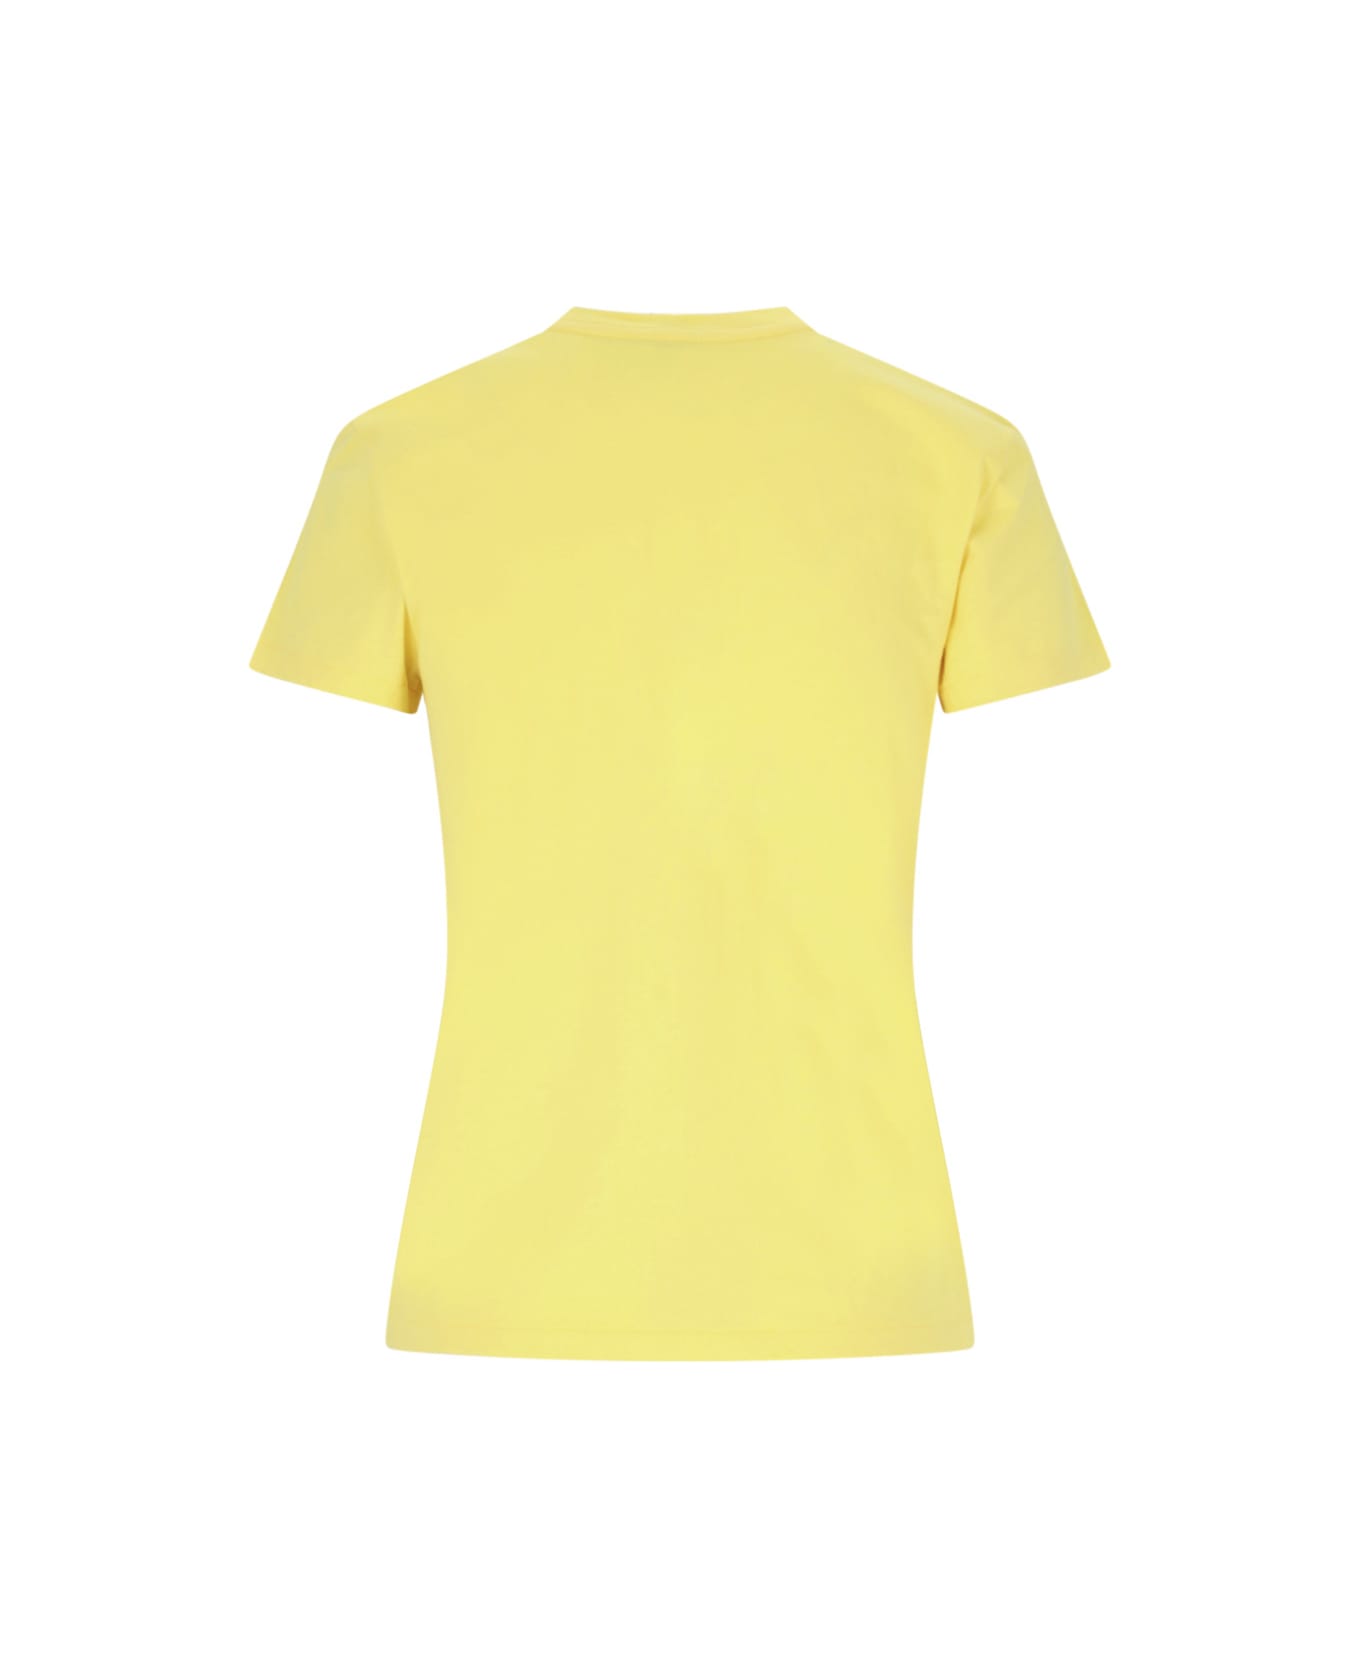 Polo Ralph Lauren Logo T-shirt - Yellow